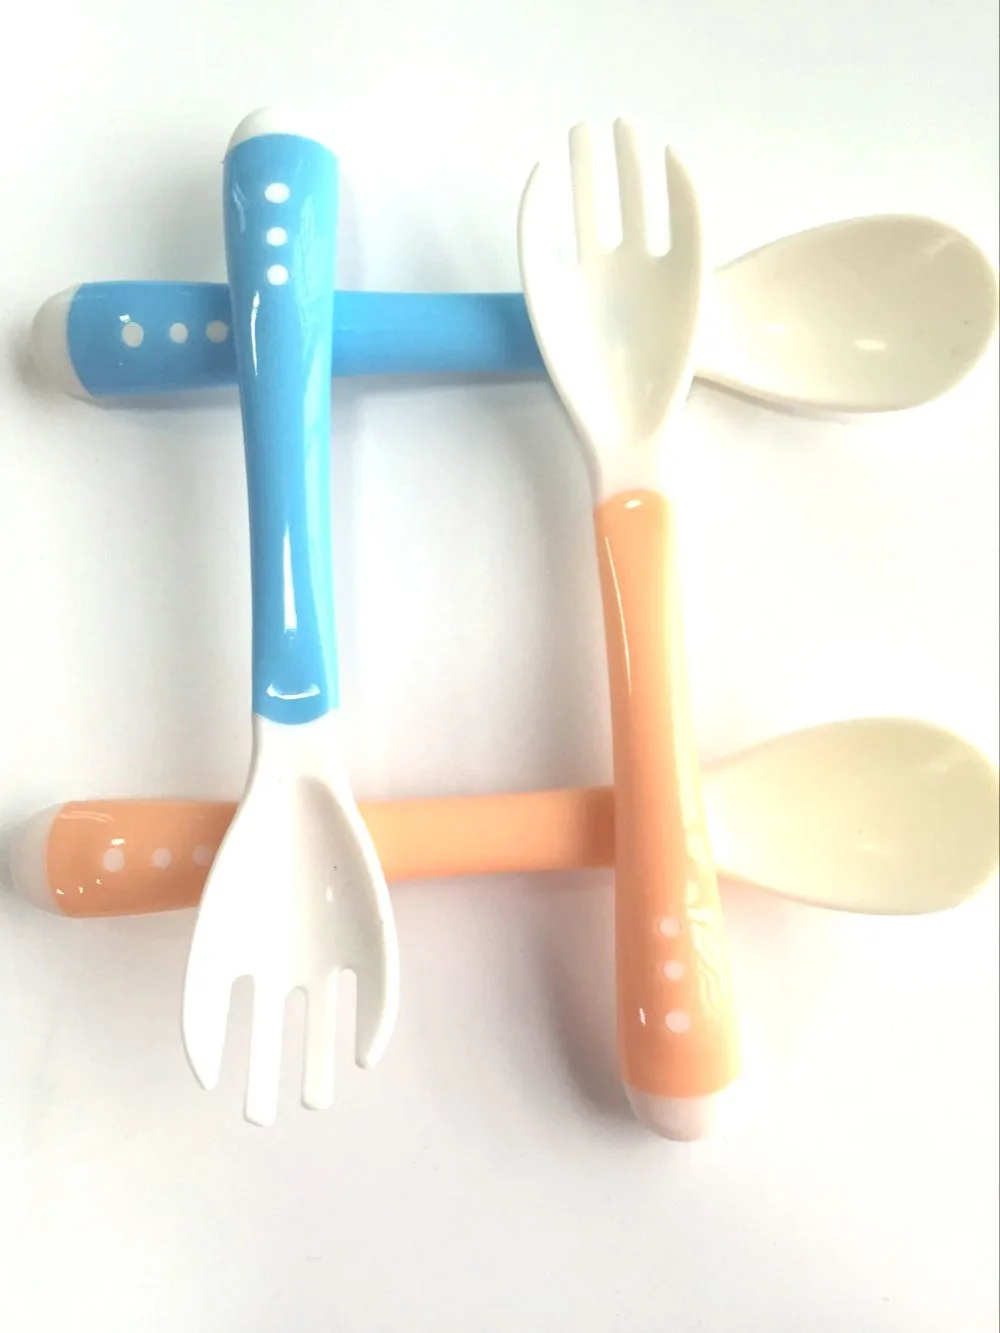 WENDYWU 4 шт./партия, мягкая детская ложка, вилка и ложка, посуда для кормления, термостойкая ложка, синий, оранжевый, подходит для 1-6 лет